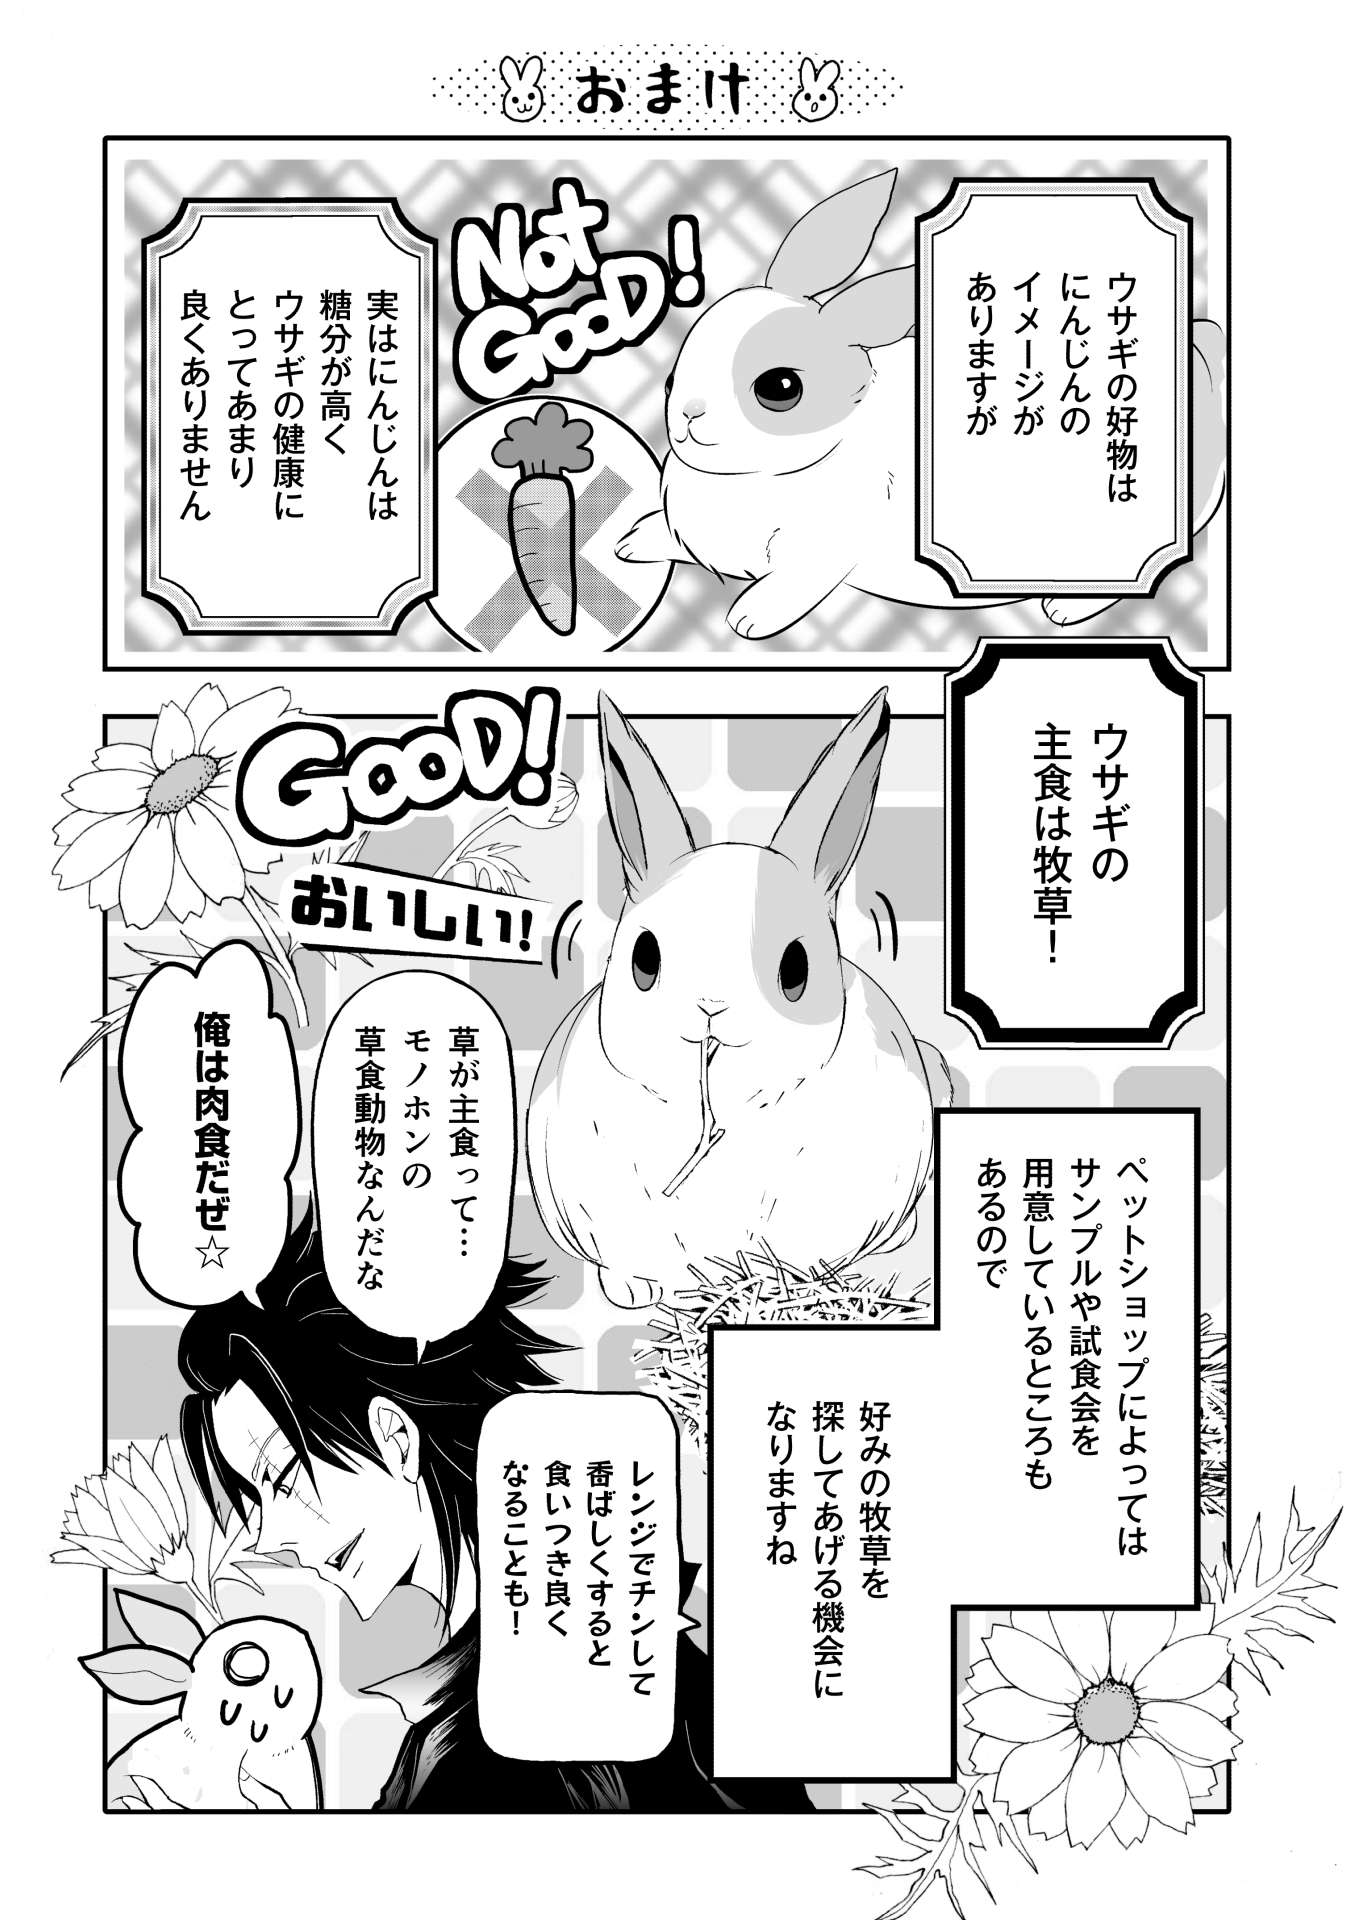 ウサギの主食は牧草。店員おすすめのサンプルを与えたウサギの反応は...／ウサゴク usagoku_03_017.jpg